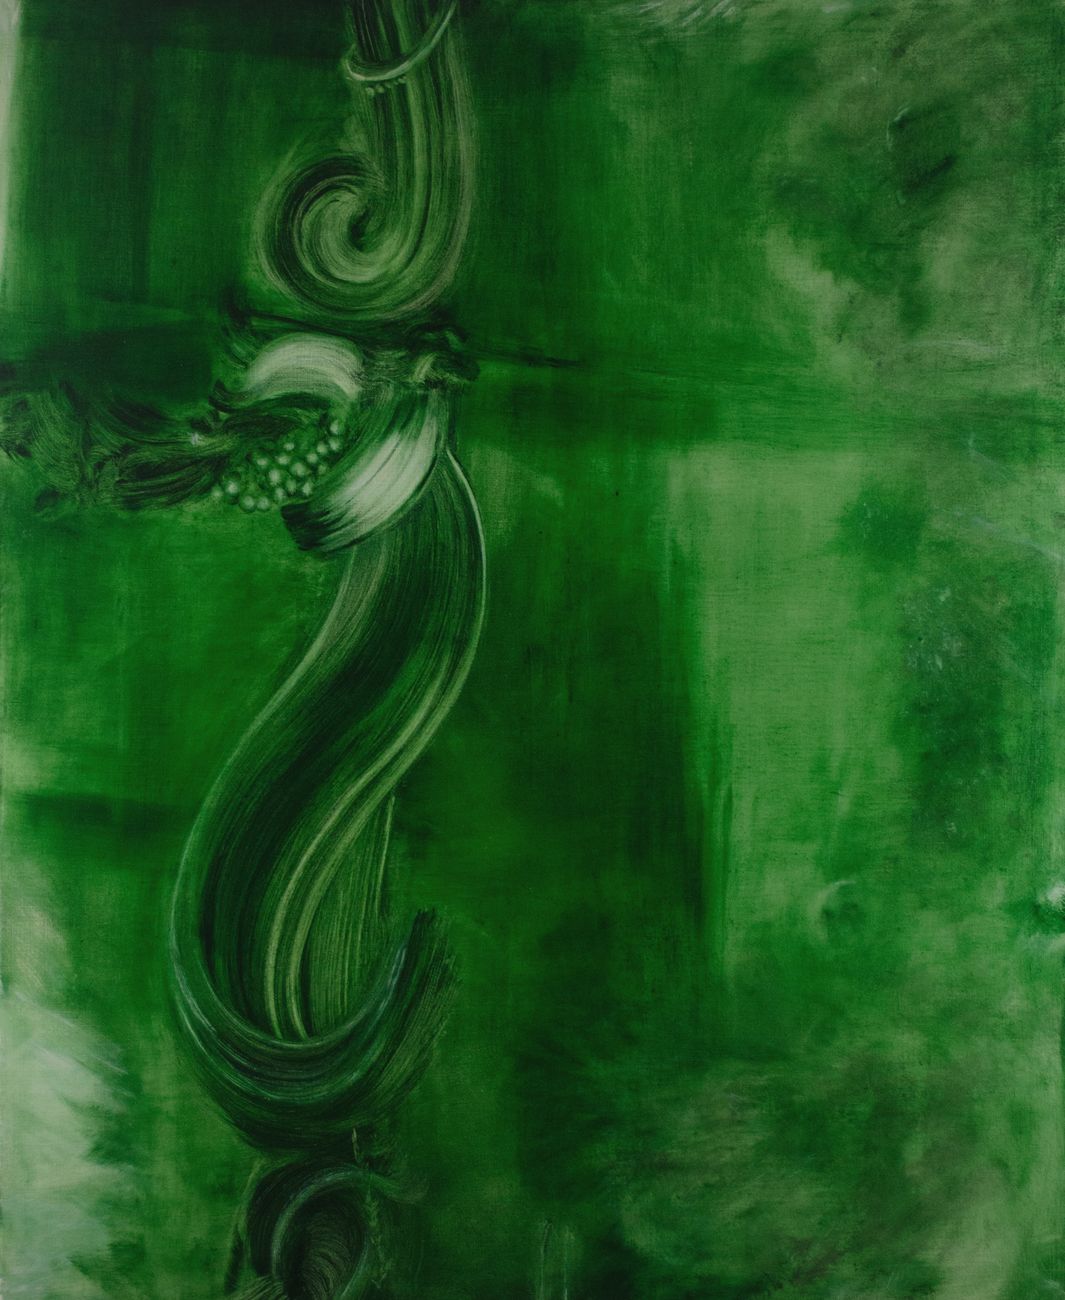 Marta Sforni, Mirror Green #11, 2015, olio su tela, 135 x 110 cm